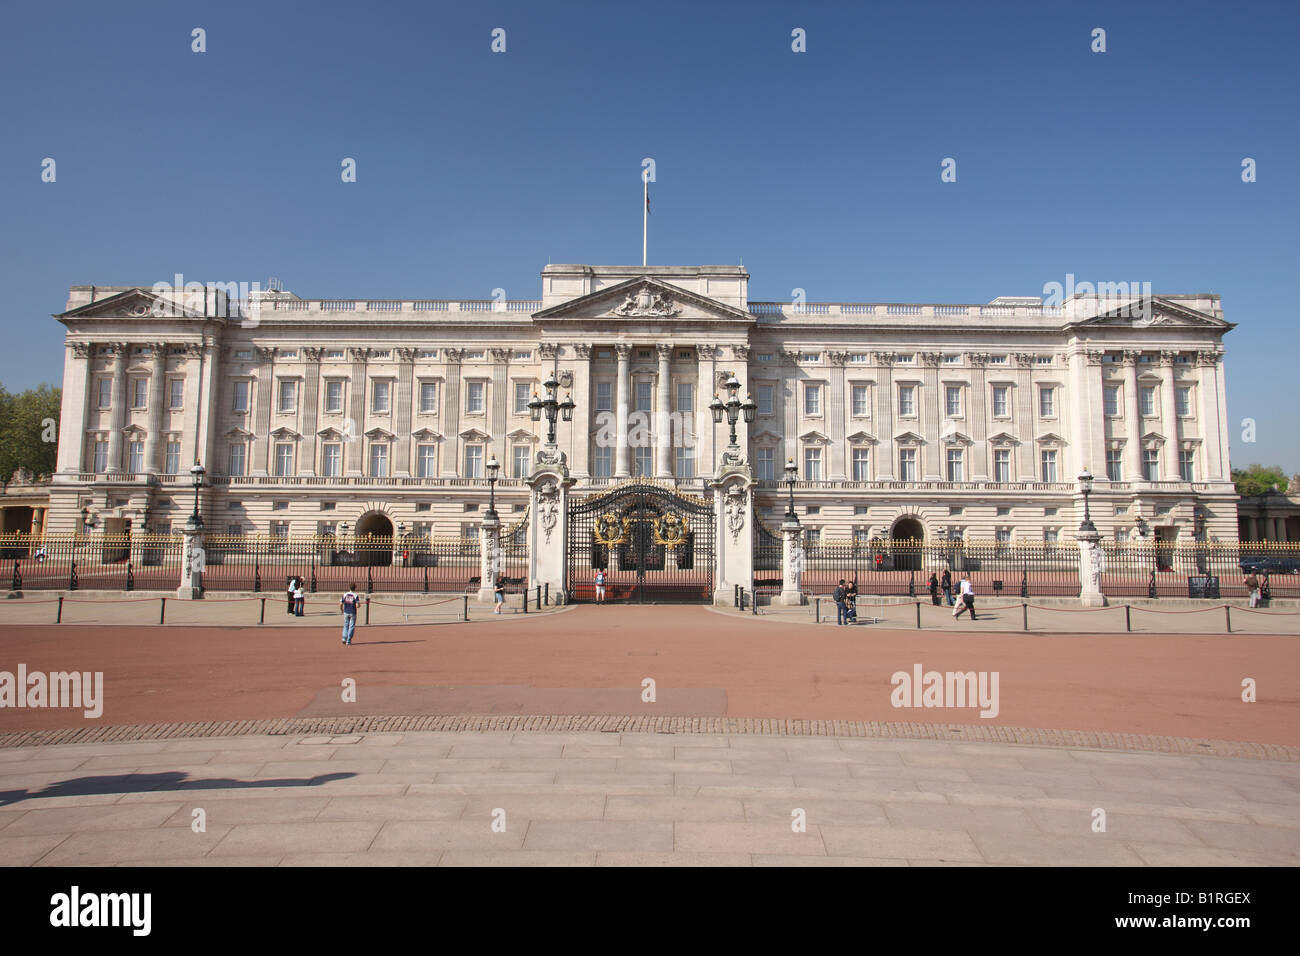 Le palais de Buckingham, Londres, Angleterre, Grande-Bretagne, Europe Banque D'Images